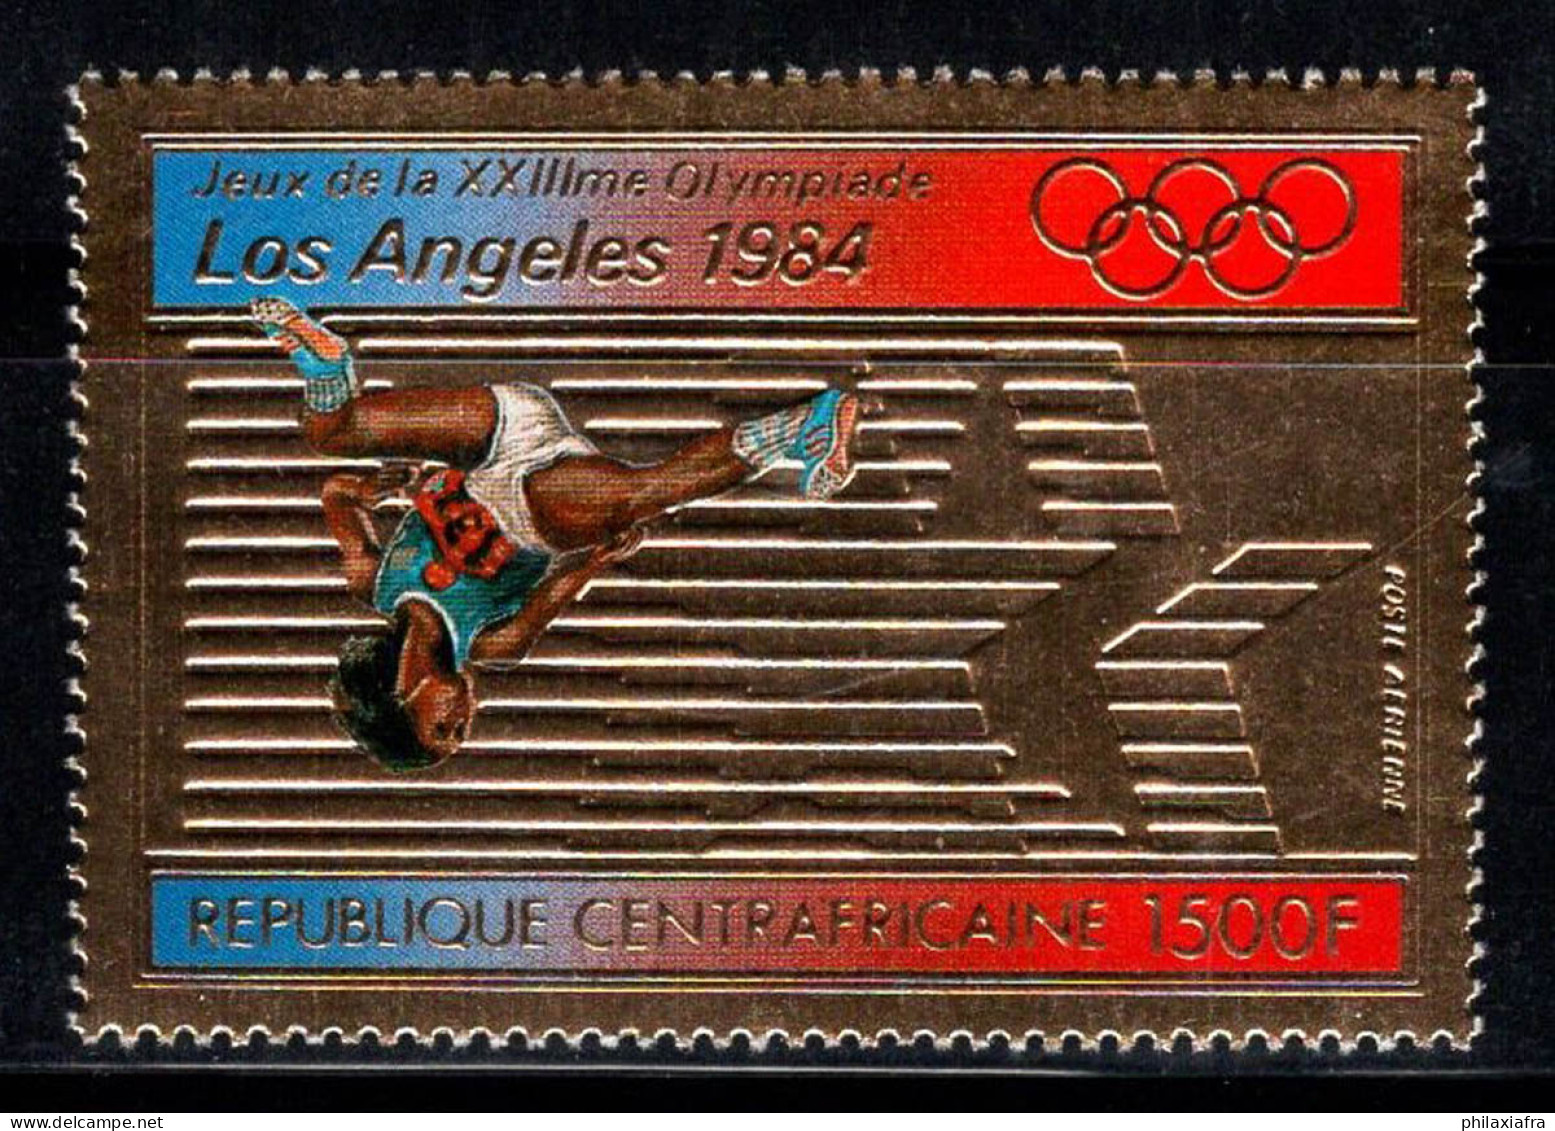 République Centrafricaine 1982 Mi. 859 Neuf ** 100% Poste Aérienne Jeux Olympiques - República Centroafricana